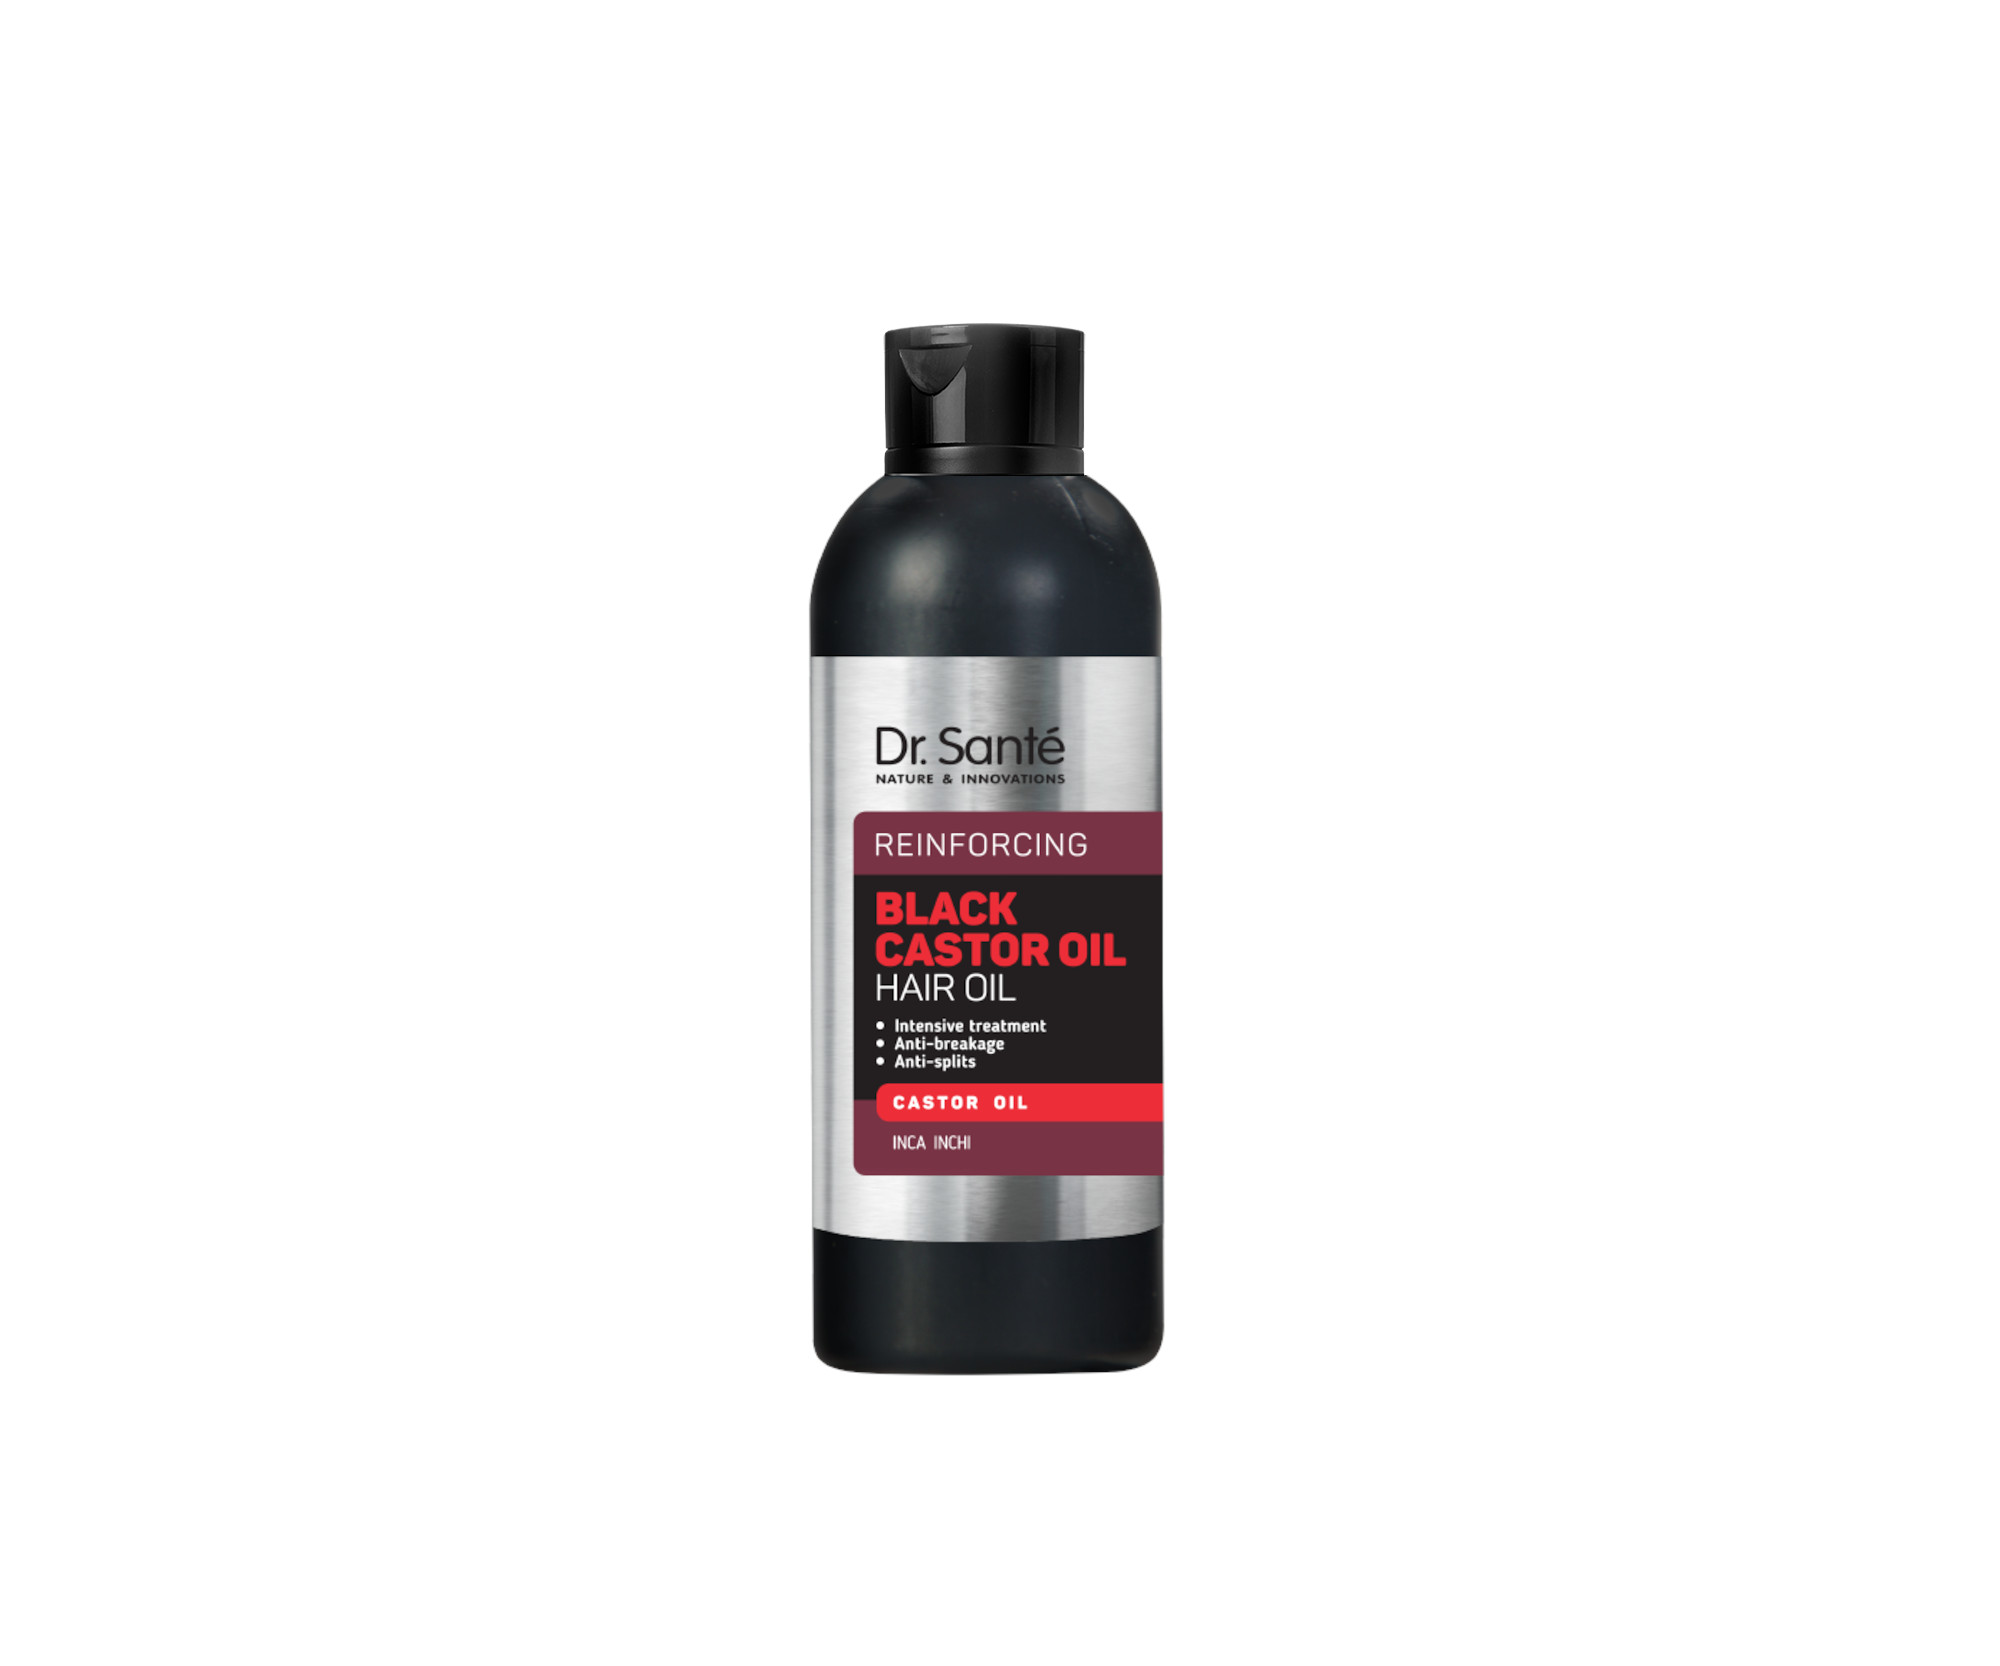 Posilující olej na vlasovou pokožku Dr. Santé Reinforcing Black Castor Oil Hair Oil - 100 ml + dárek zdarma